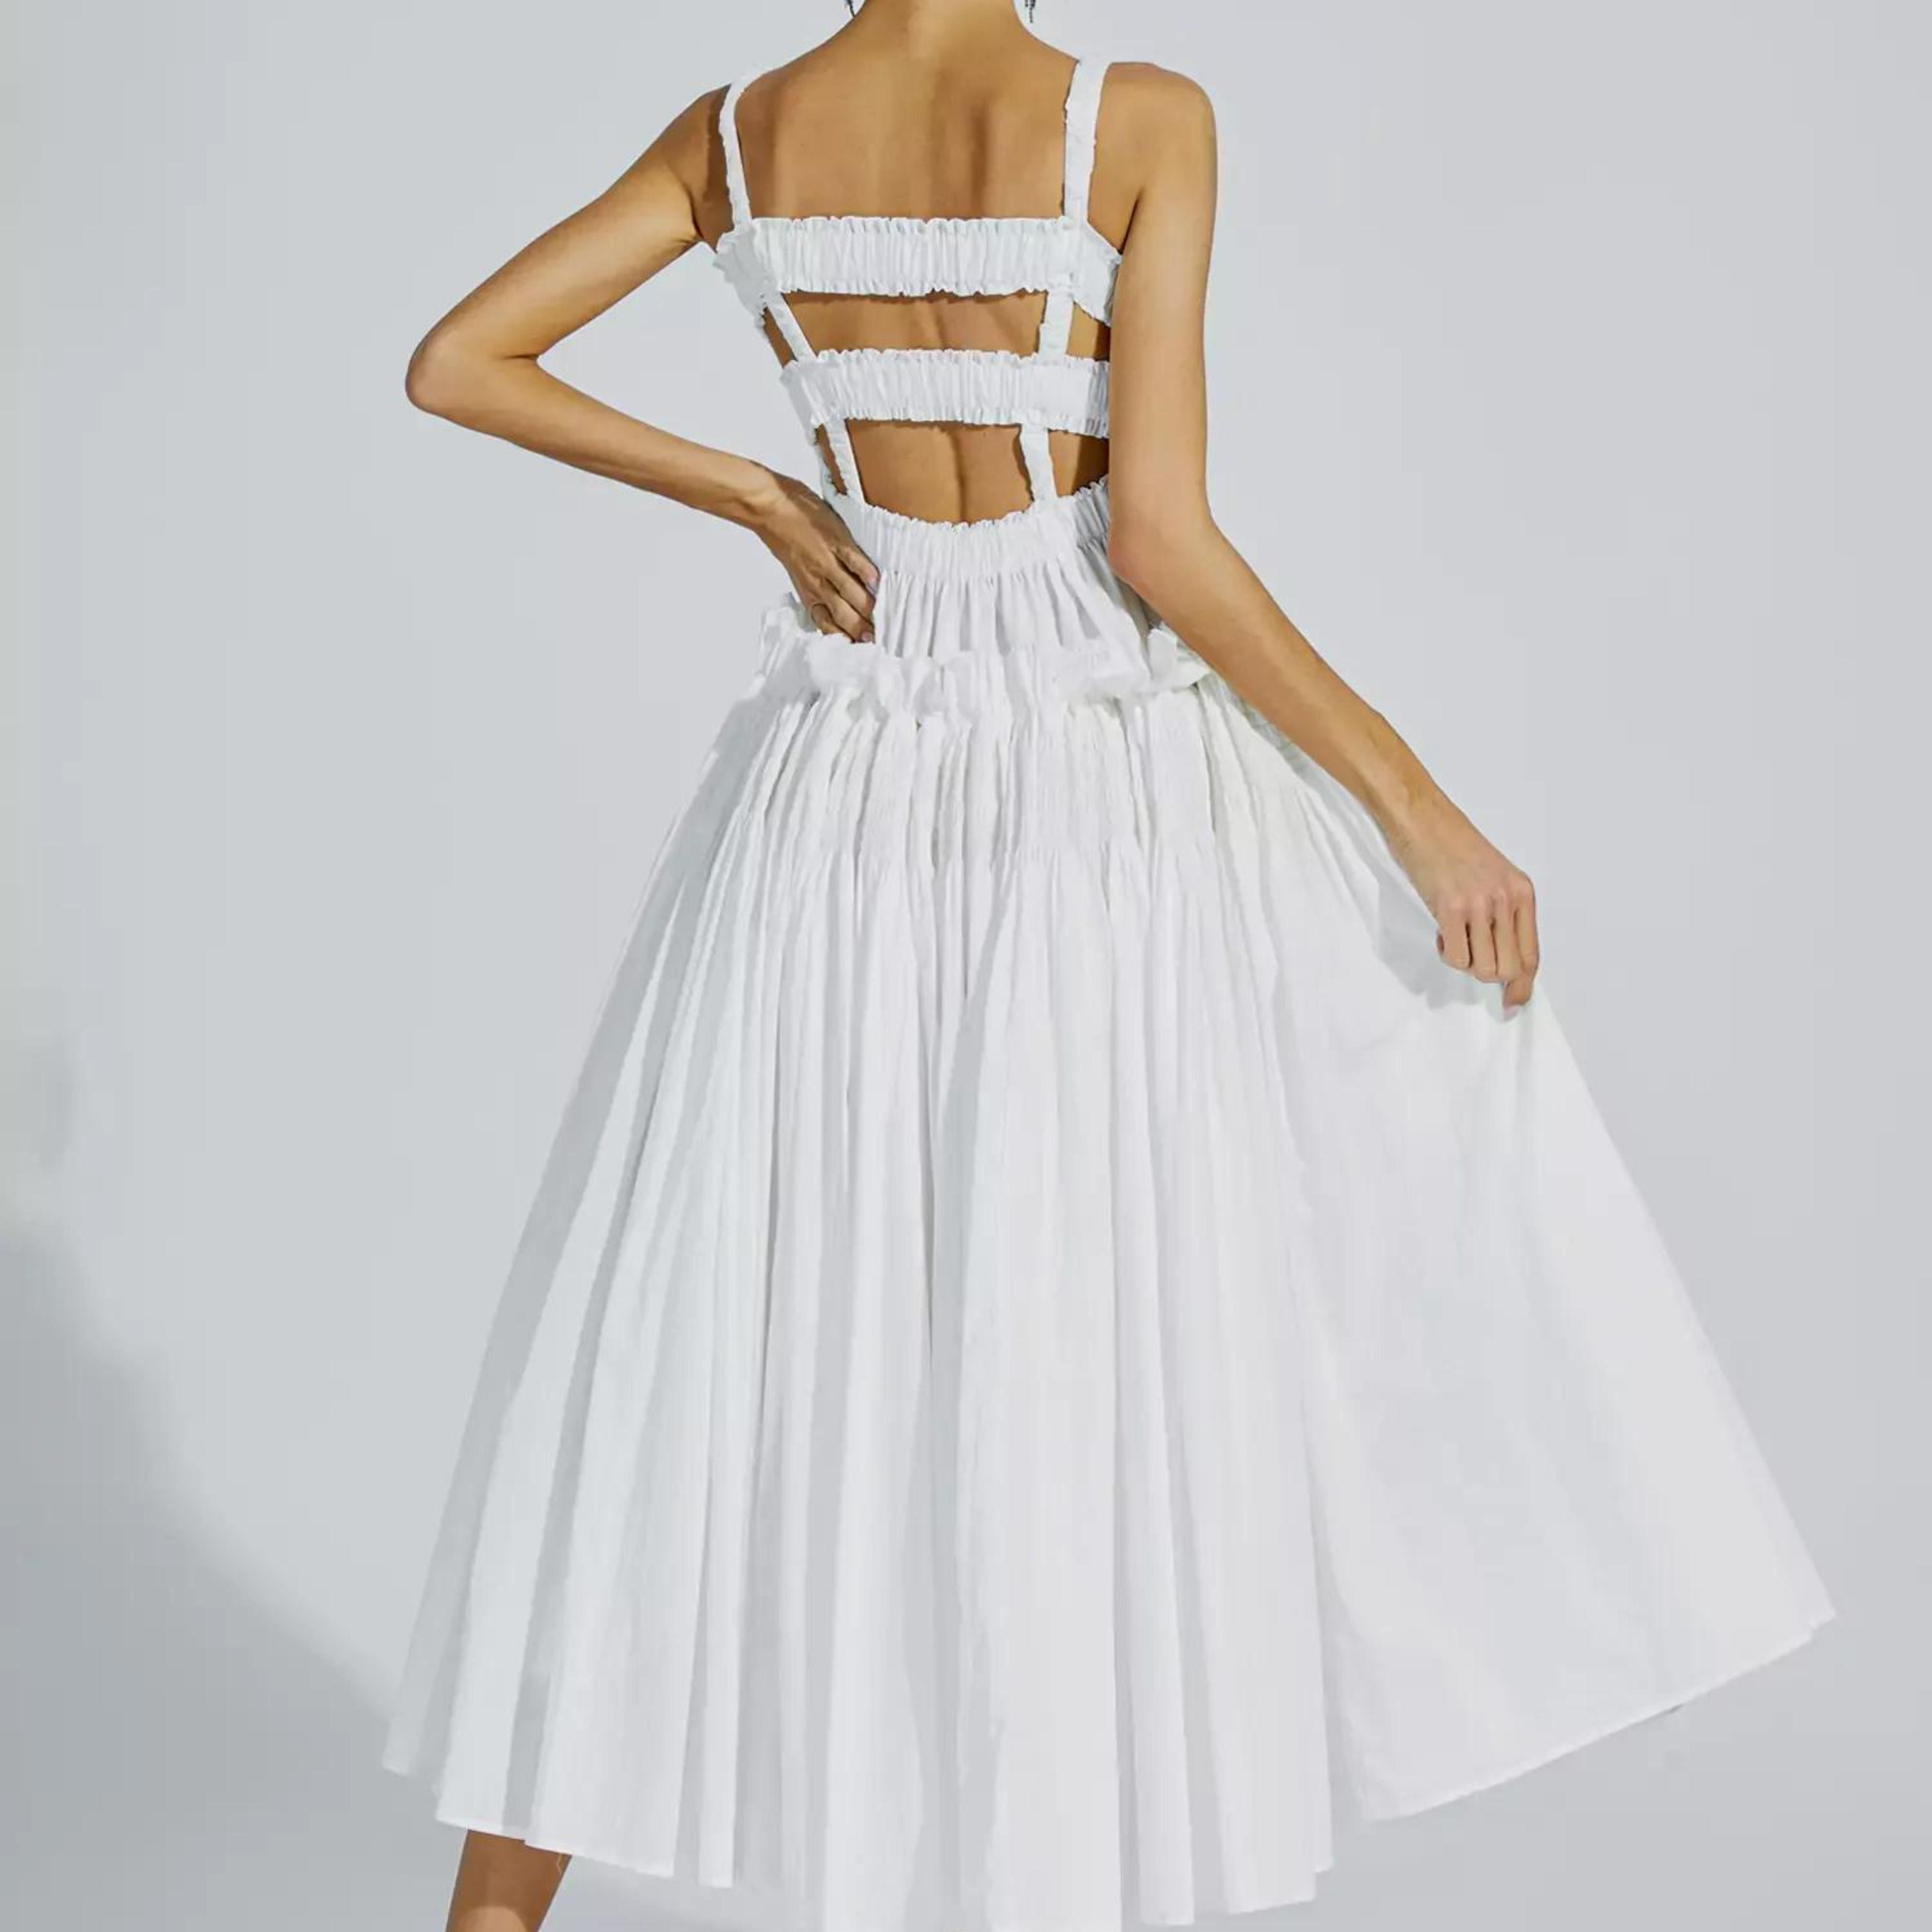 Selene White Slip Midi Dress: Timeless Elegance.